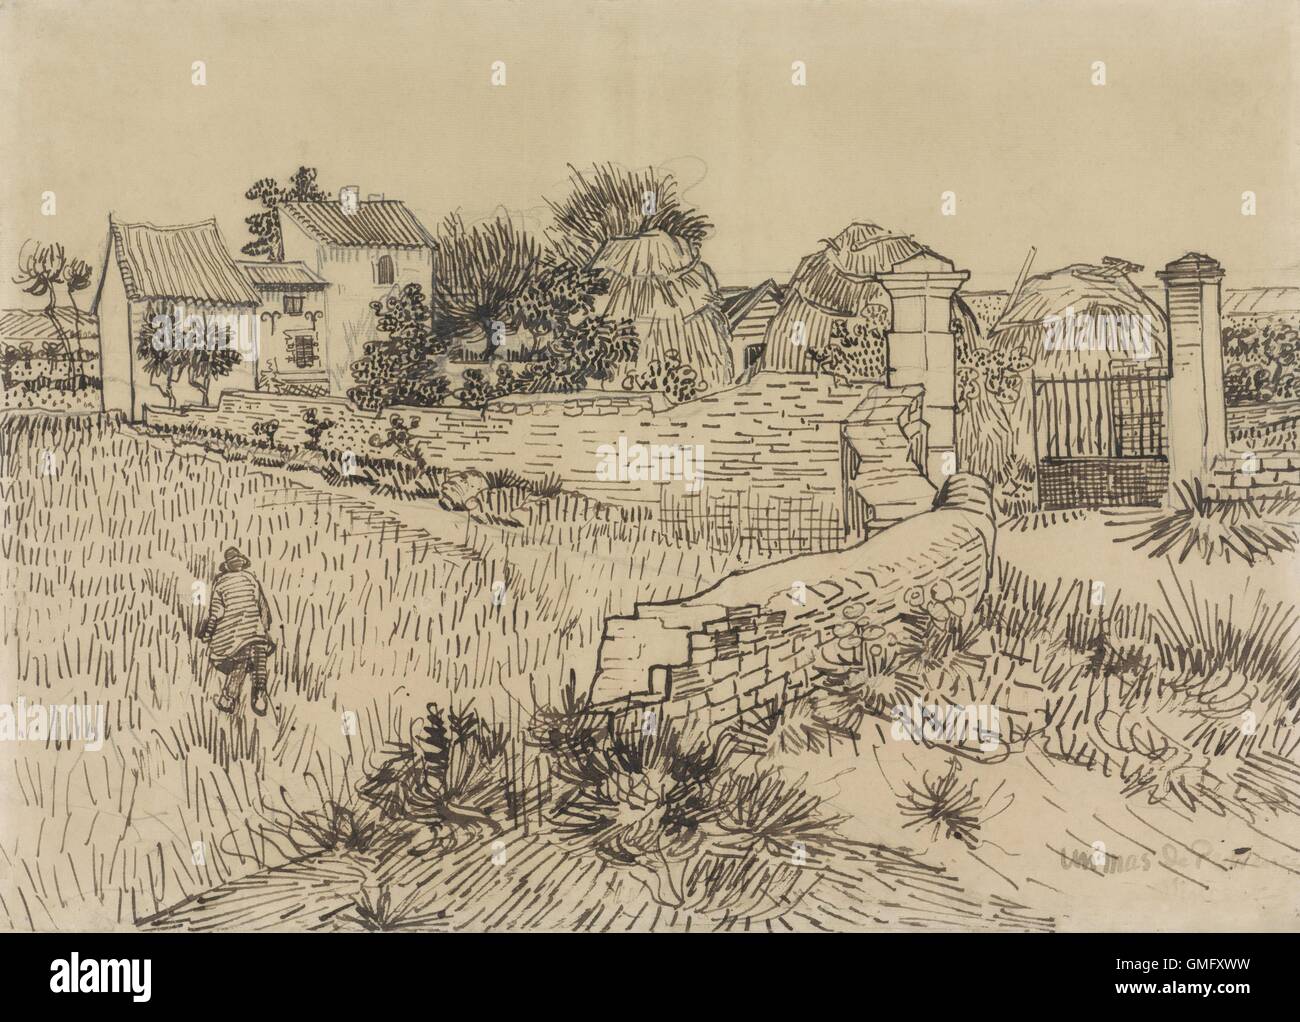 Ferme en Provence, par Vincent van Gogh, ch. 1888 Néerlandais, dessin, crayon, plume et encre sur papier. Dessiné avec van Gogh rythmique caractéristique de marques (BSLOC 2016 2 301) Banque D'Images